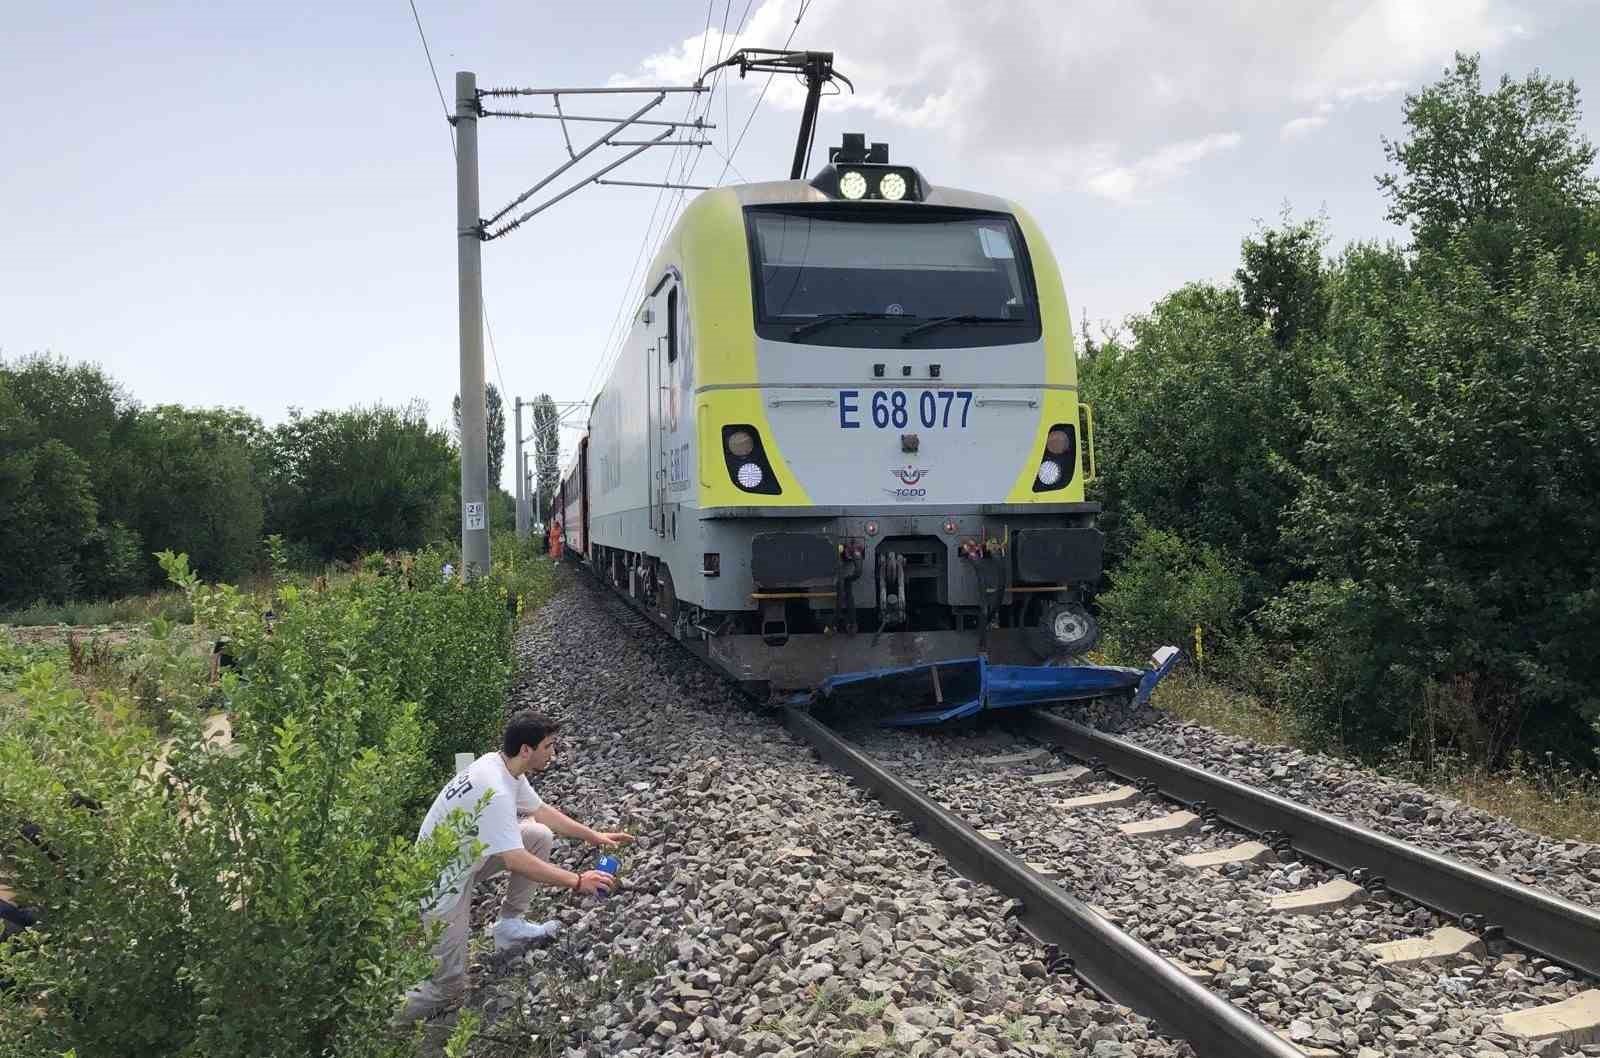 Kütahya’da yolcu treni çapa motoruna çarptı: 1 ölü
